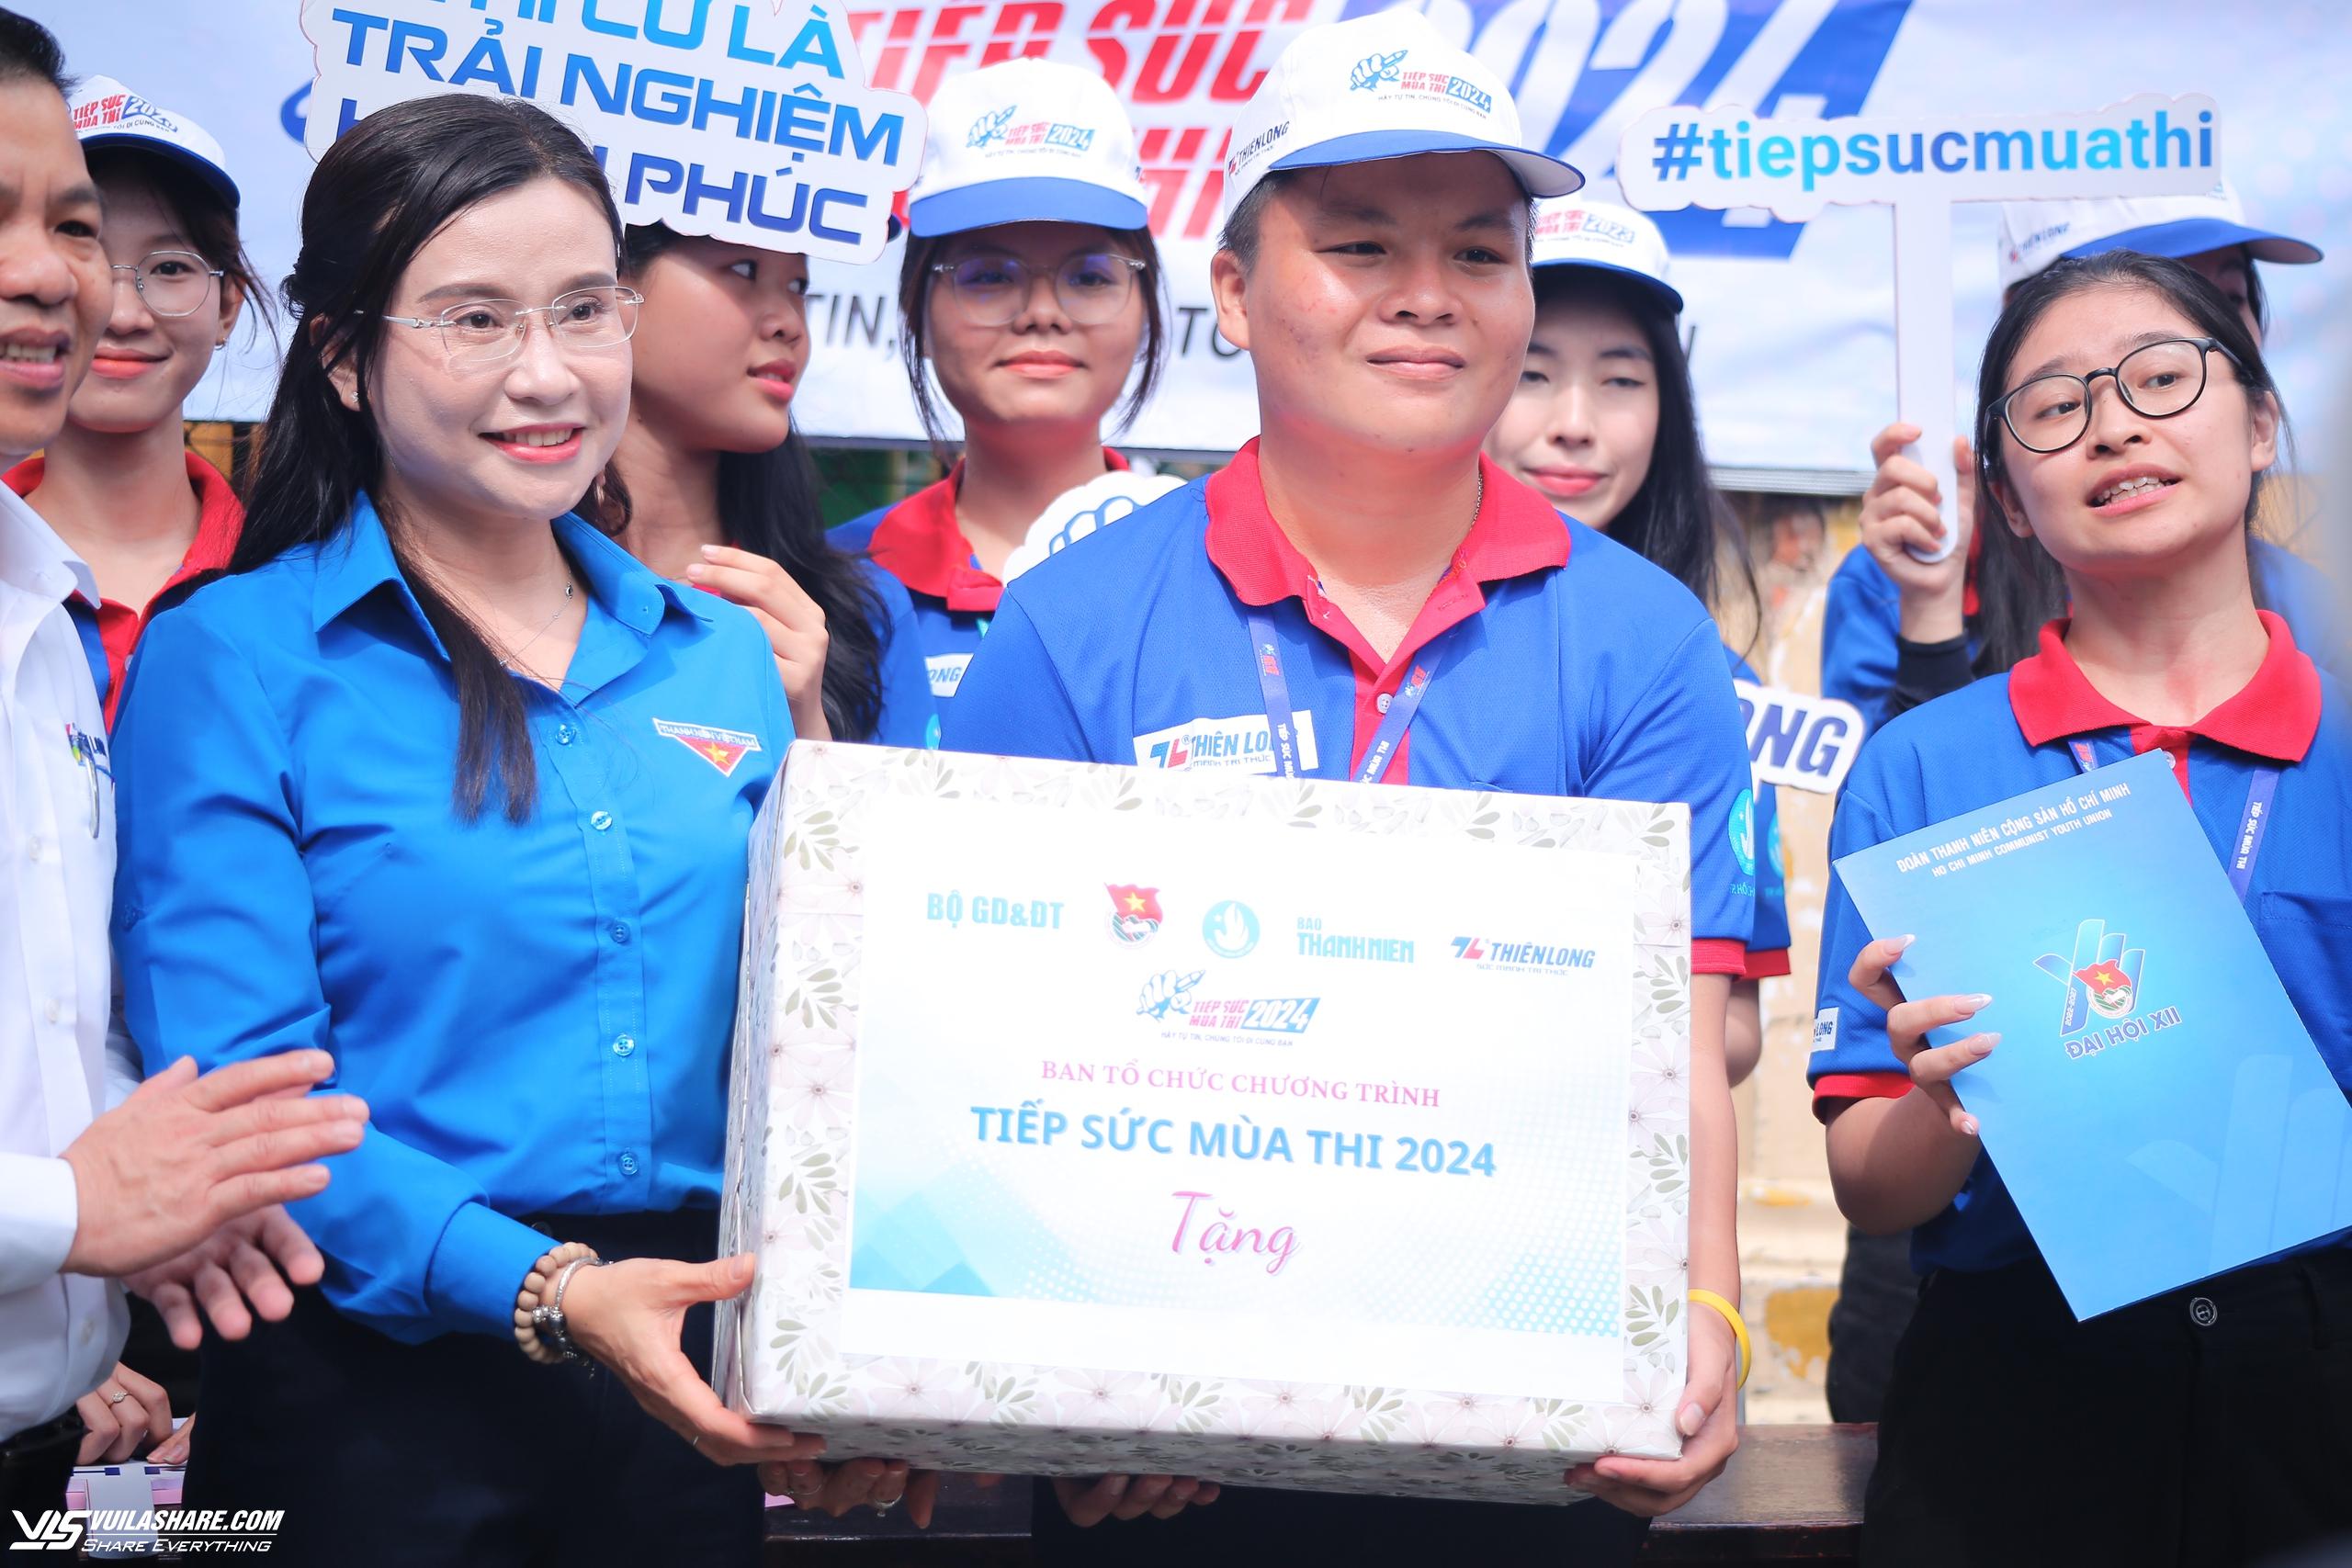 Bí thư T.Ư Đoàn Nguyễn Phạm Duy Trang thăm tình nguyện viên Tiếp sức mùa thi- Ảnh 3.